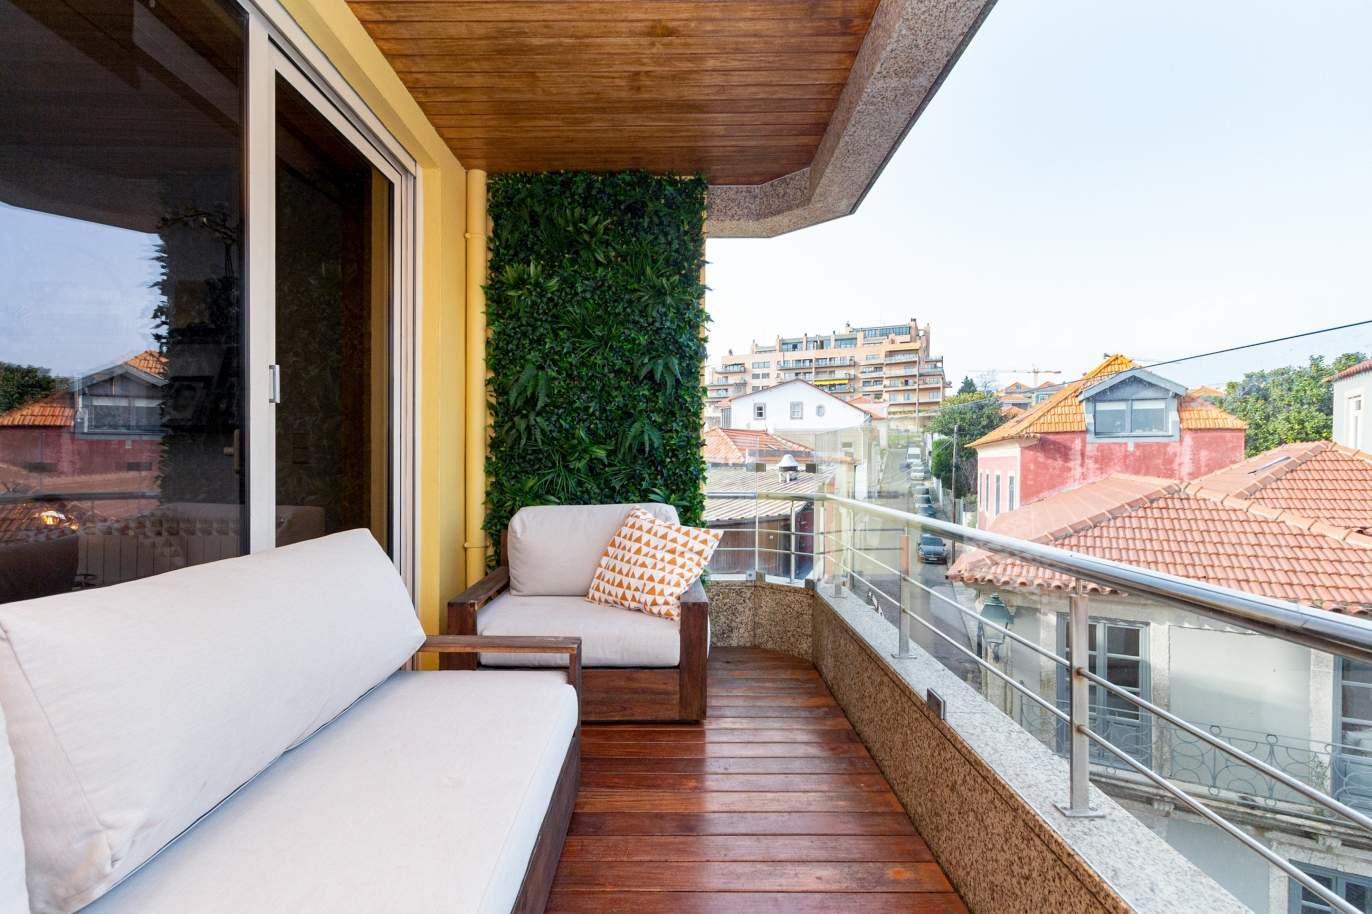 Apartamento com varanda, para venda, na Foz do Douro, Porto, Portugal_163789